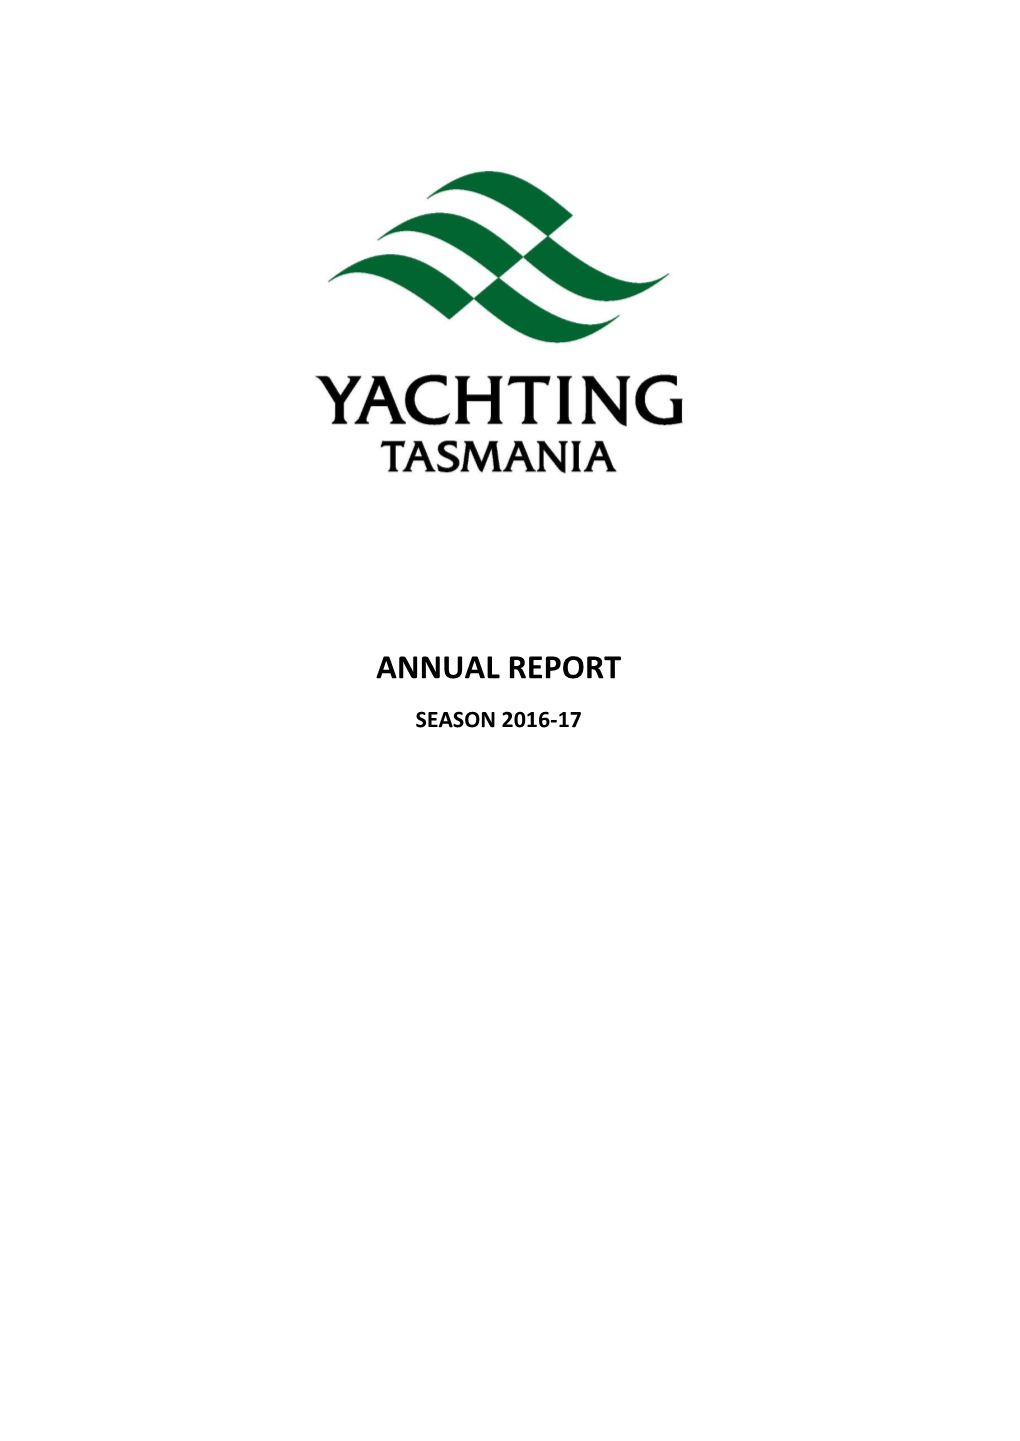 Annual Report Season 2016-17